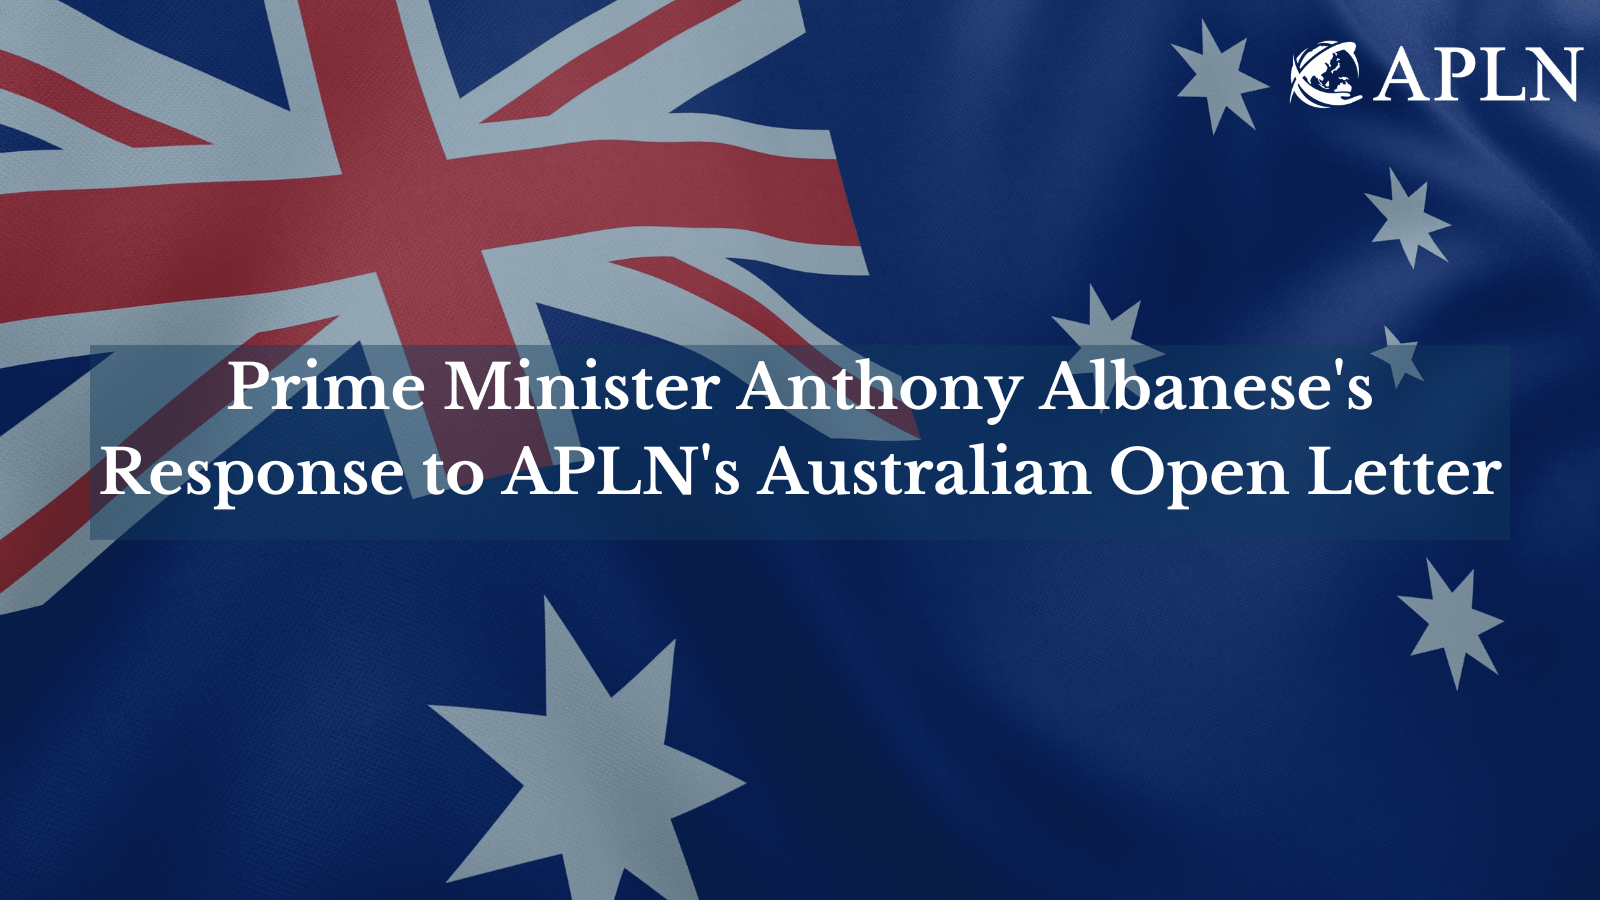 Prime Minister Anthony Albanese's Response to APLN's Australian Open Letter